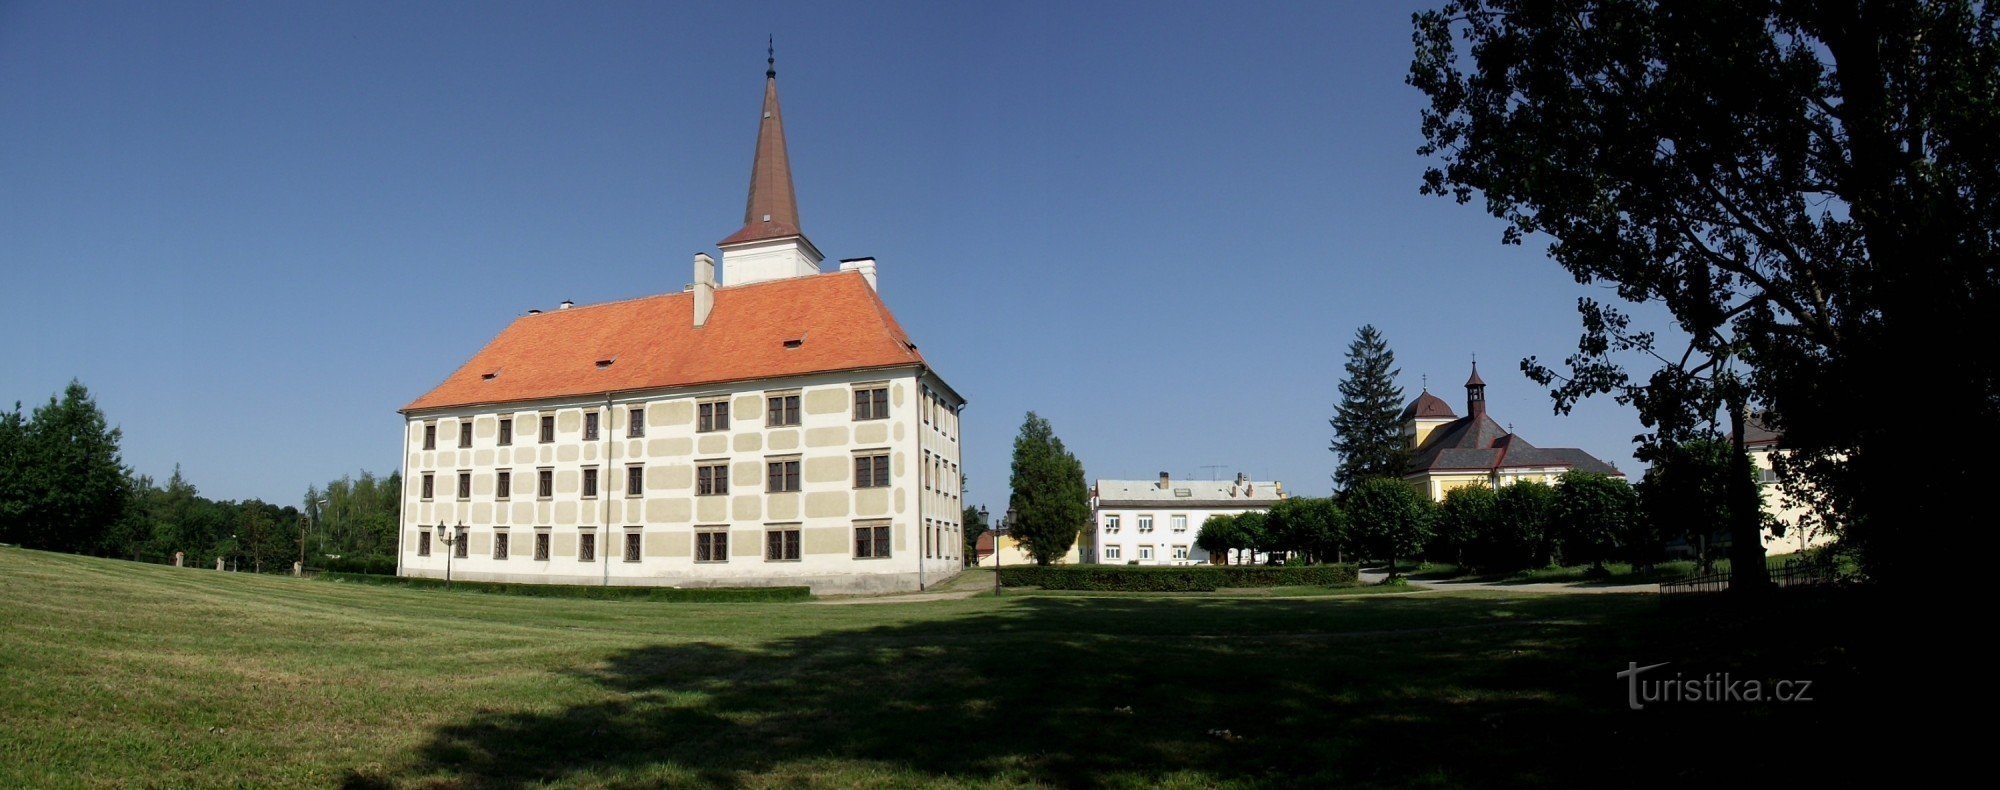 Het Chropyň-kasteel is het werk van de bouwer GP Tencalla